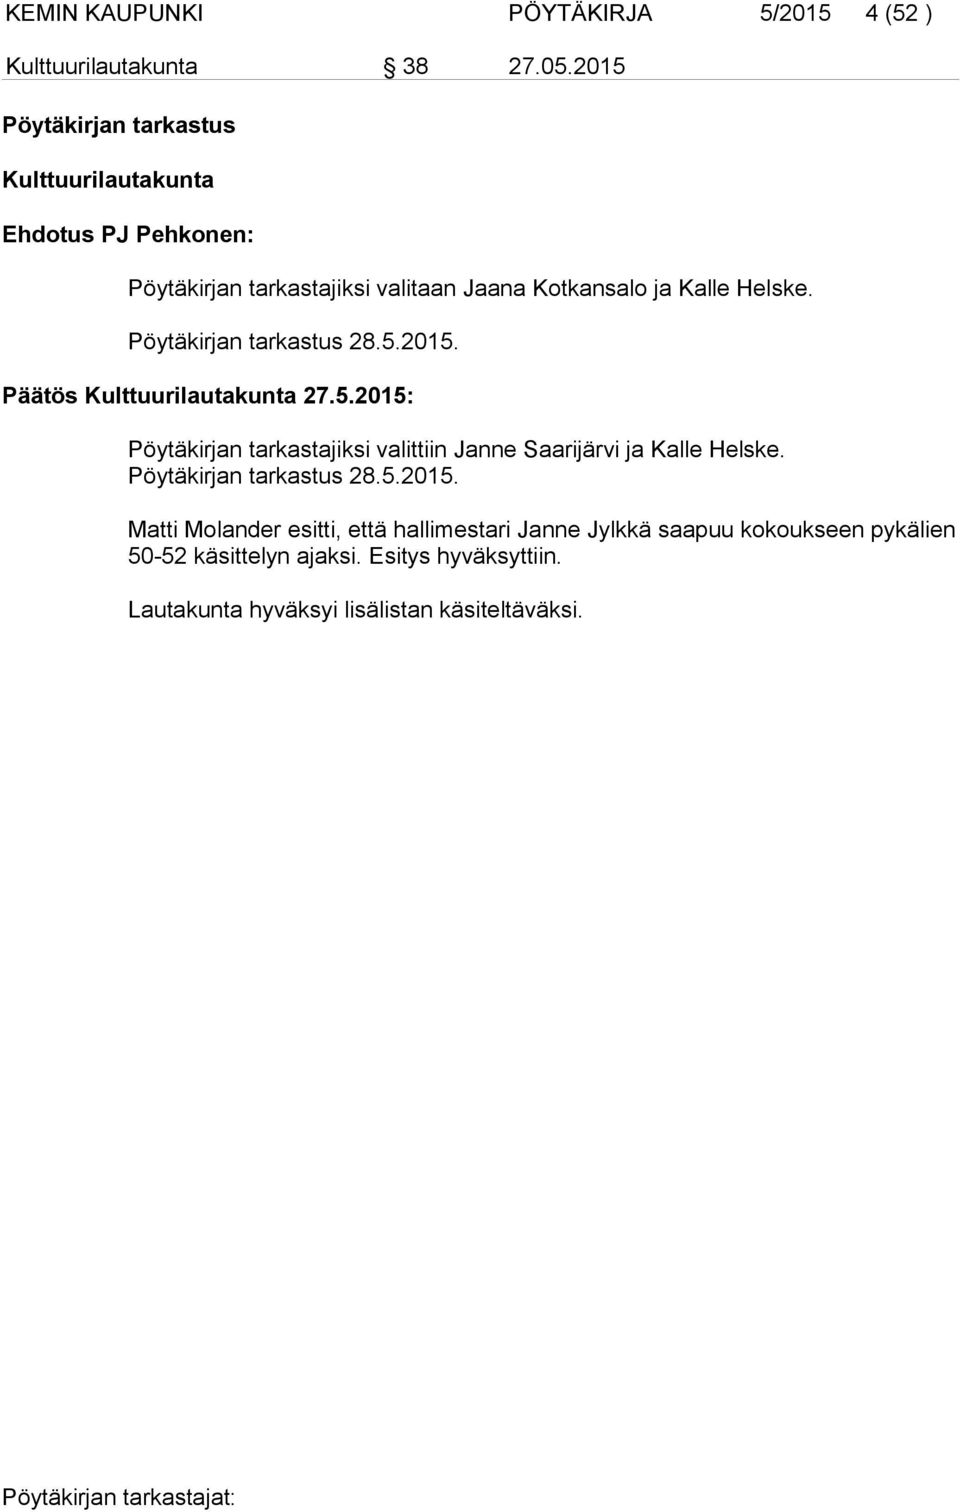 Pöytäkirjan tarkastus 28.5.2015. Päätös Kulttuurilautakunta 27.5.2015: Pöytäkirjan tarkastajiksi valittiin Janne Saarijärvi ja Kalle Helske.